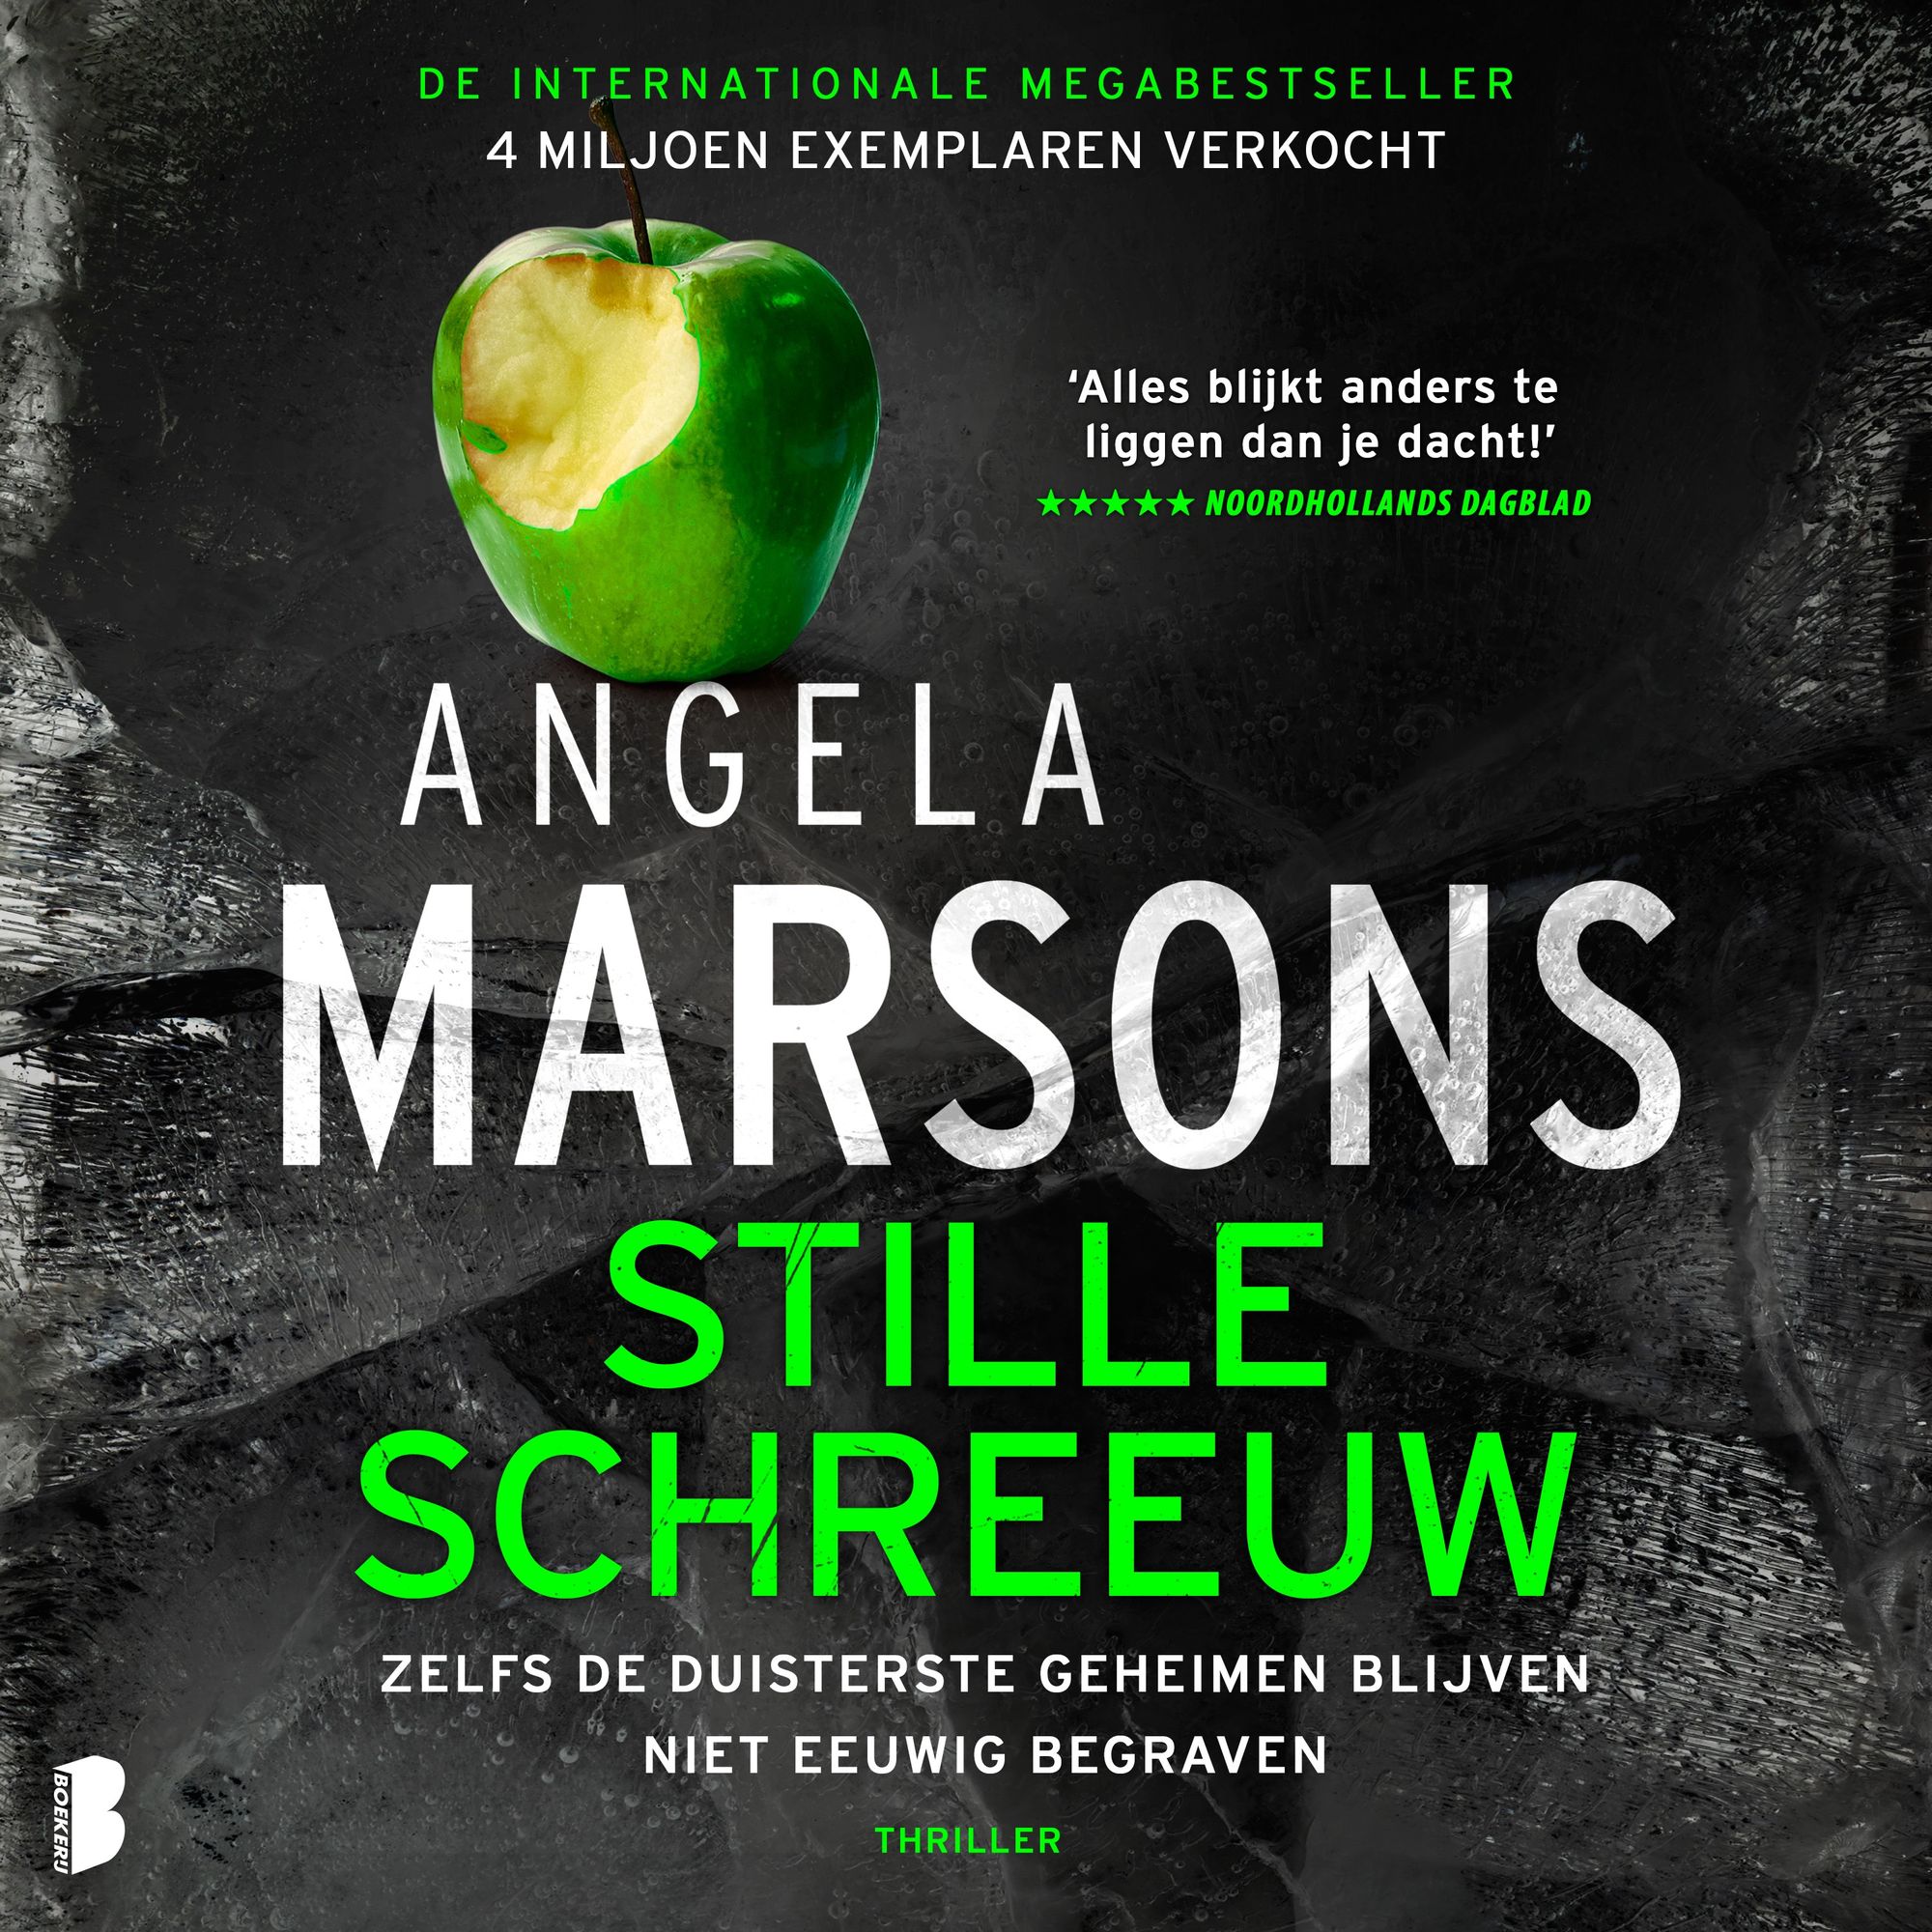 Stille schreeuw' von 'Angela Marsons' - Hörbuch-Download